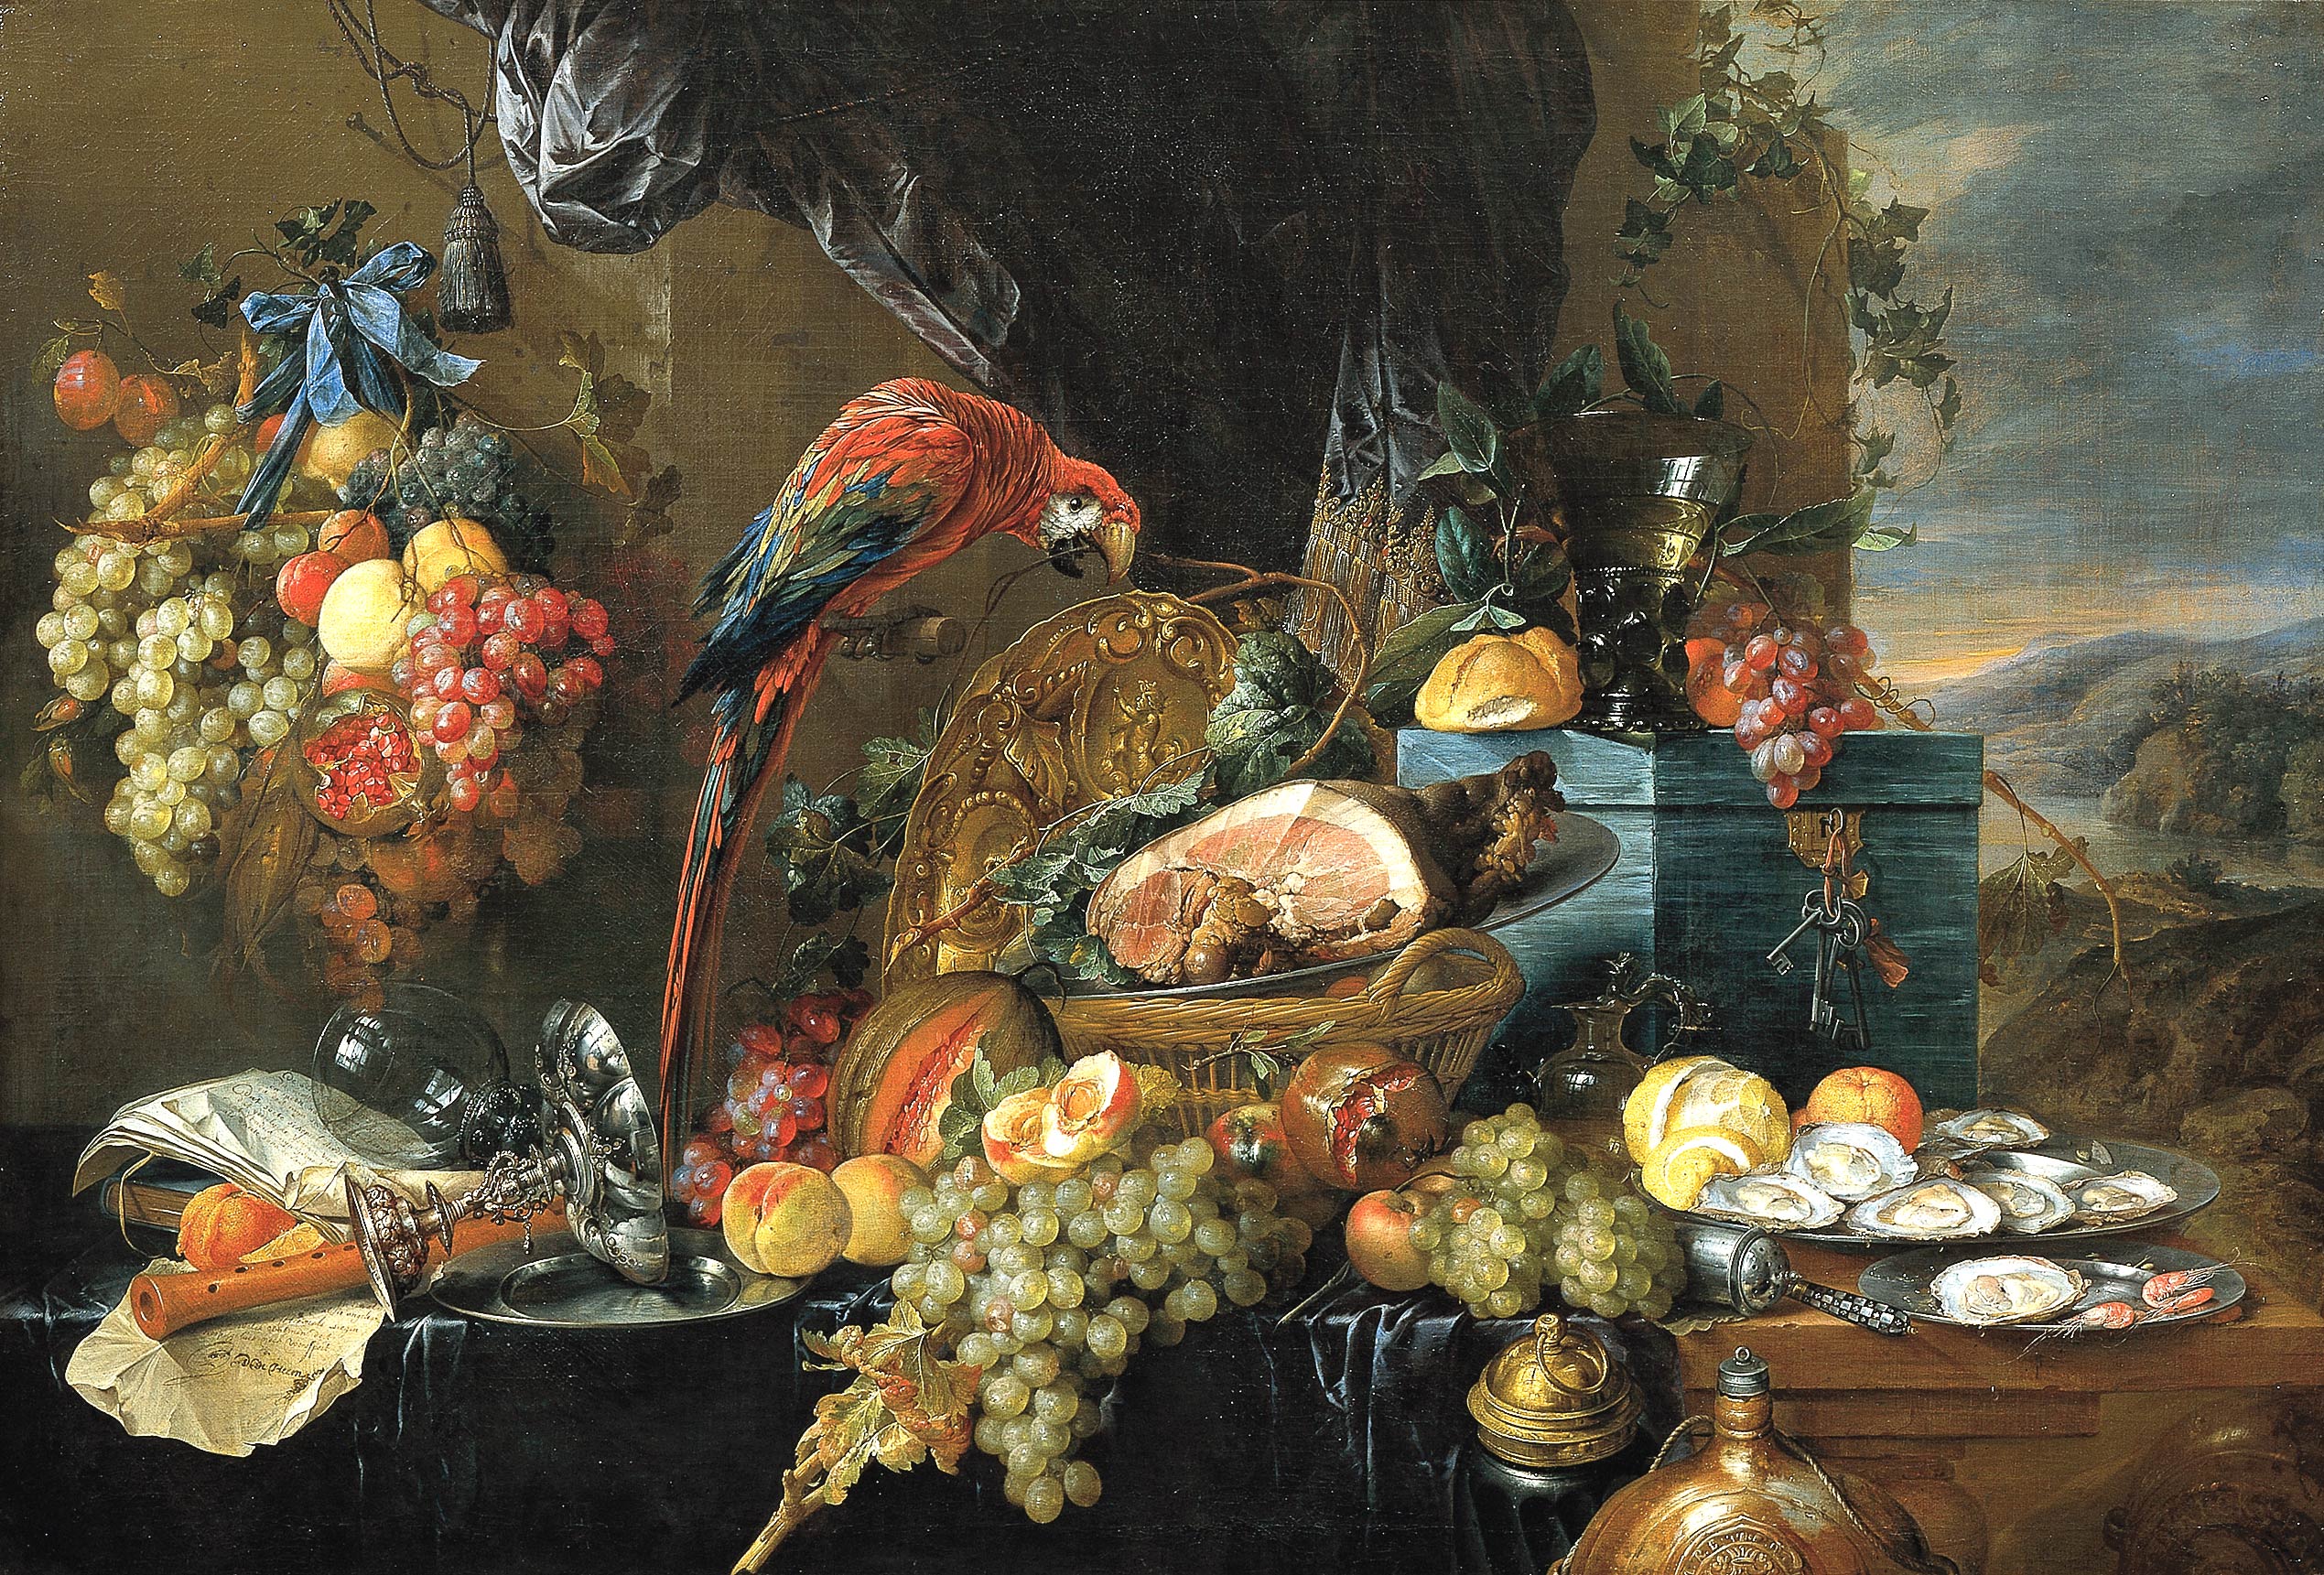 Heem, Jan Davidsz. de - A Richly Laid Table with Parrots - c. 1650